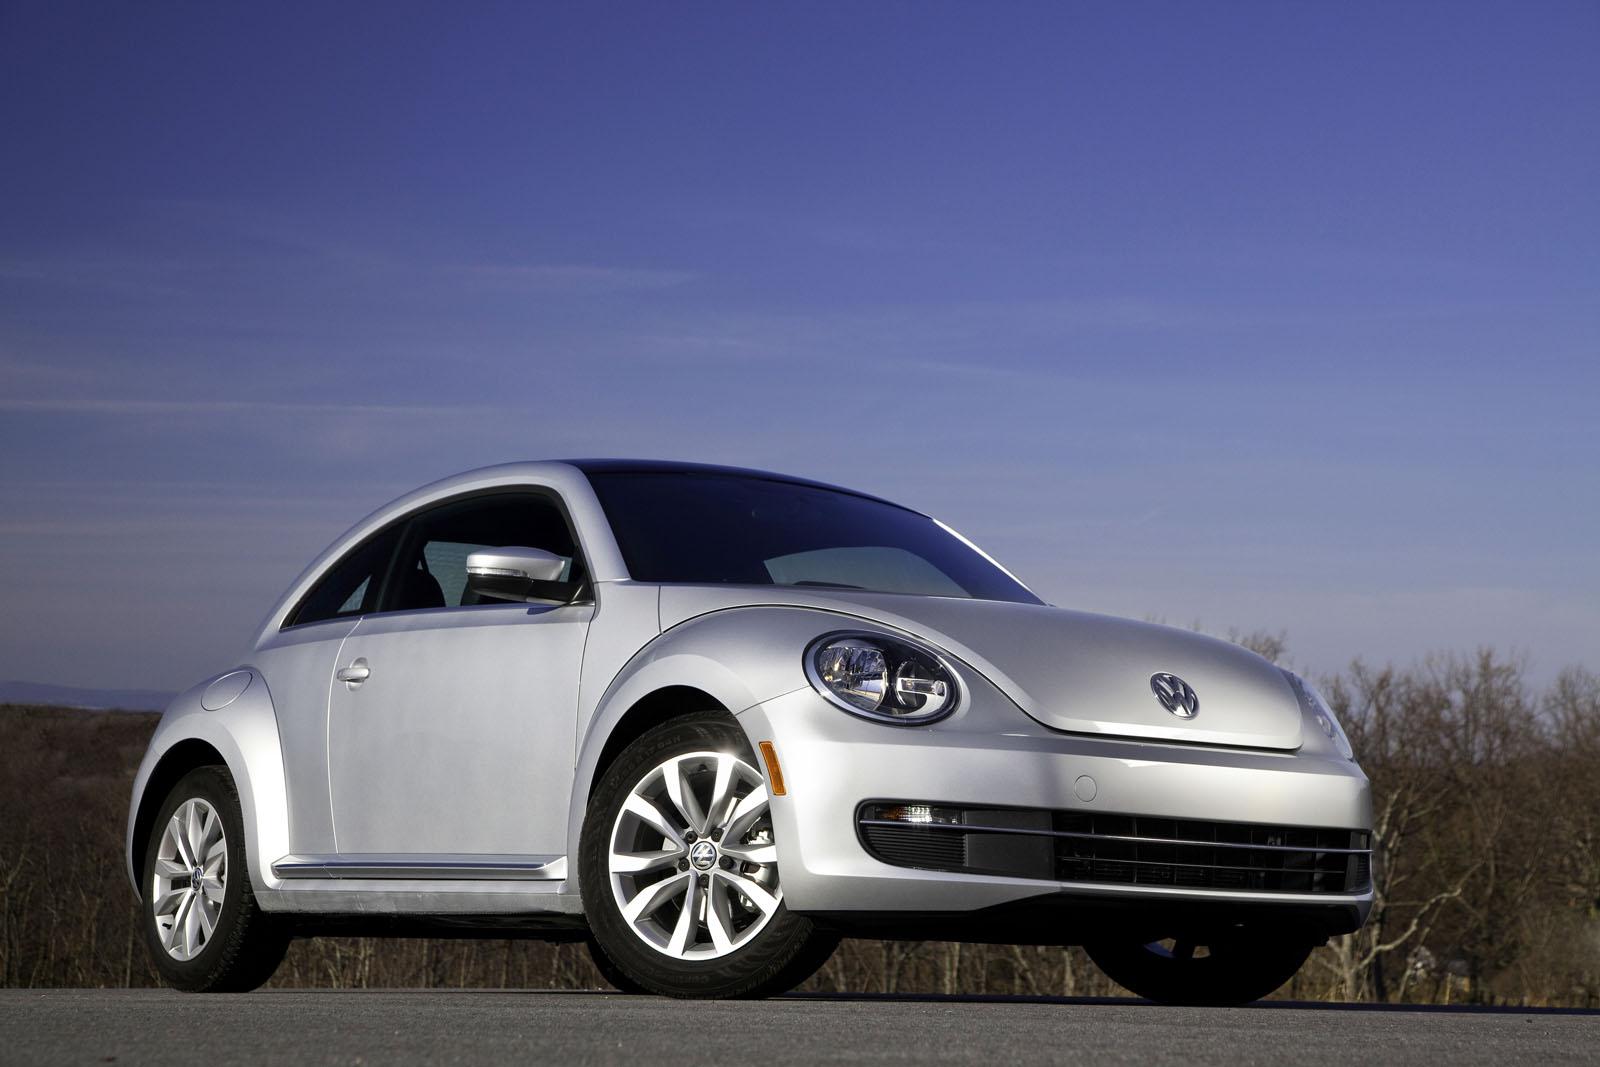 2013 Volkswagen Beetle TDI US